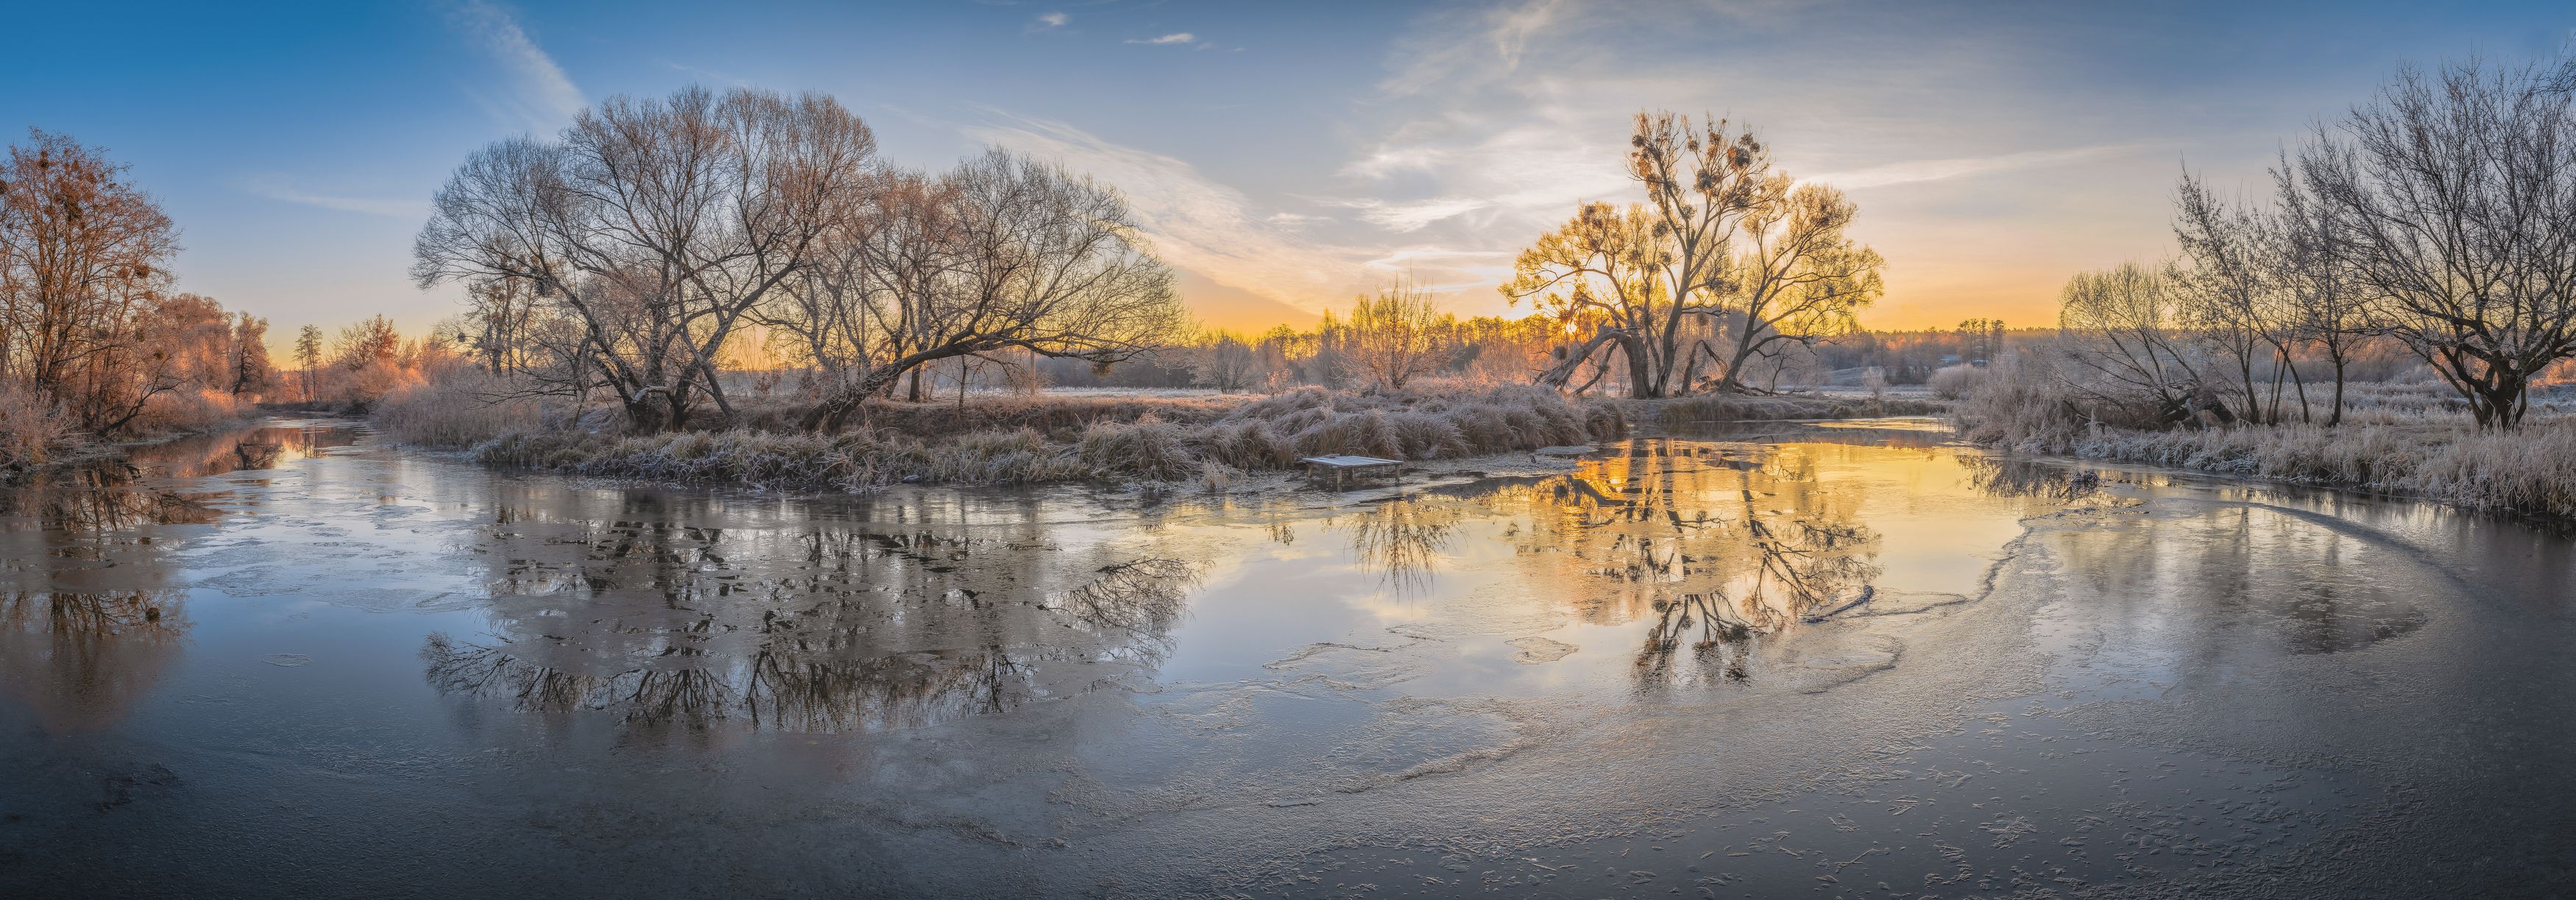 утро, мороз, река, дерево, туман, вода, панорама,, Андрей Косенко